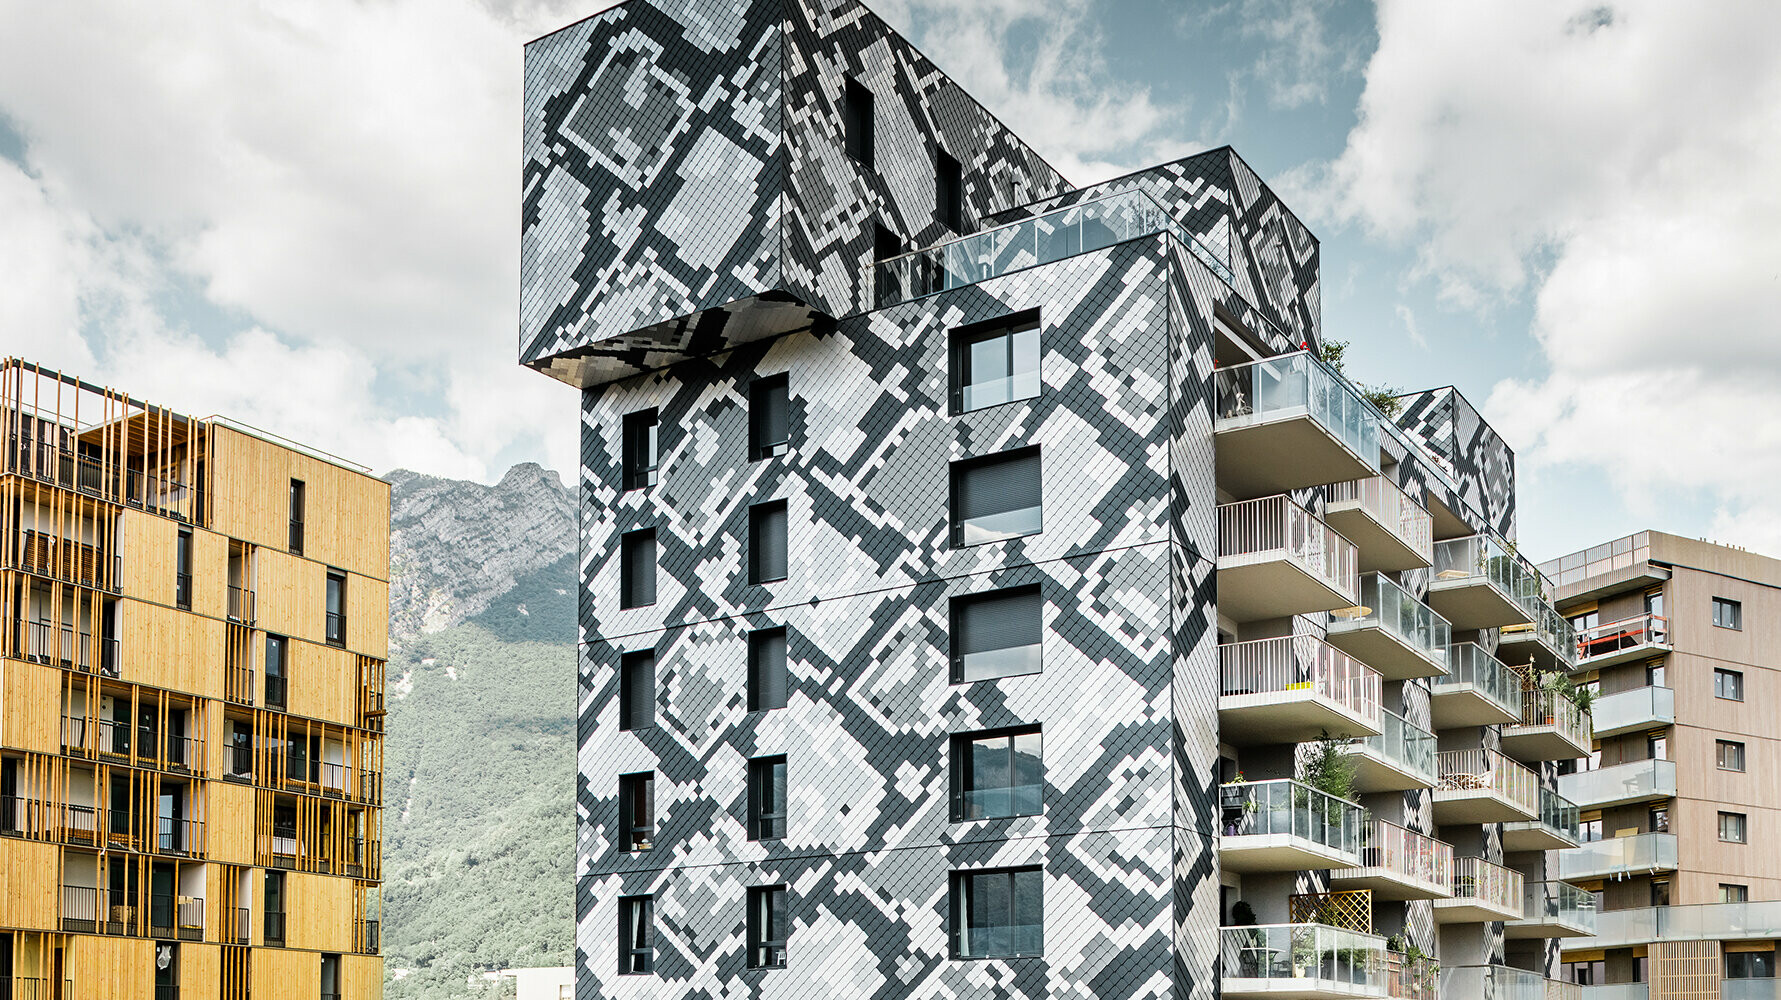 Die Fassade dieses Mehrfamilienhauses in Grenoble erinnert mit ihren verschiedenfarbigen Schuppen an eine Schlange.